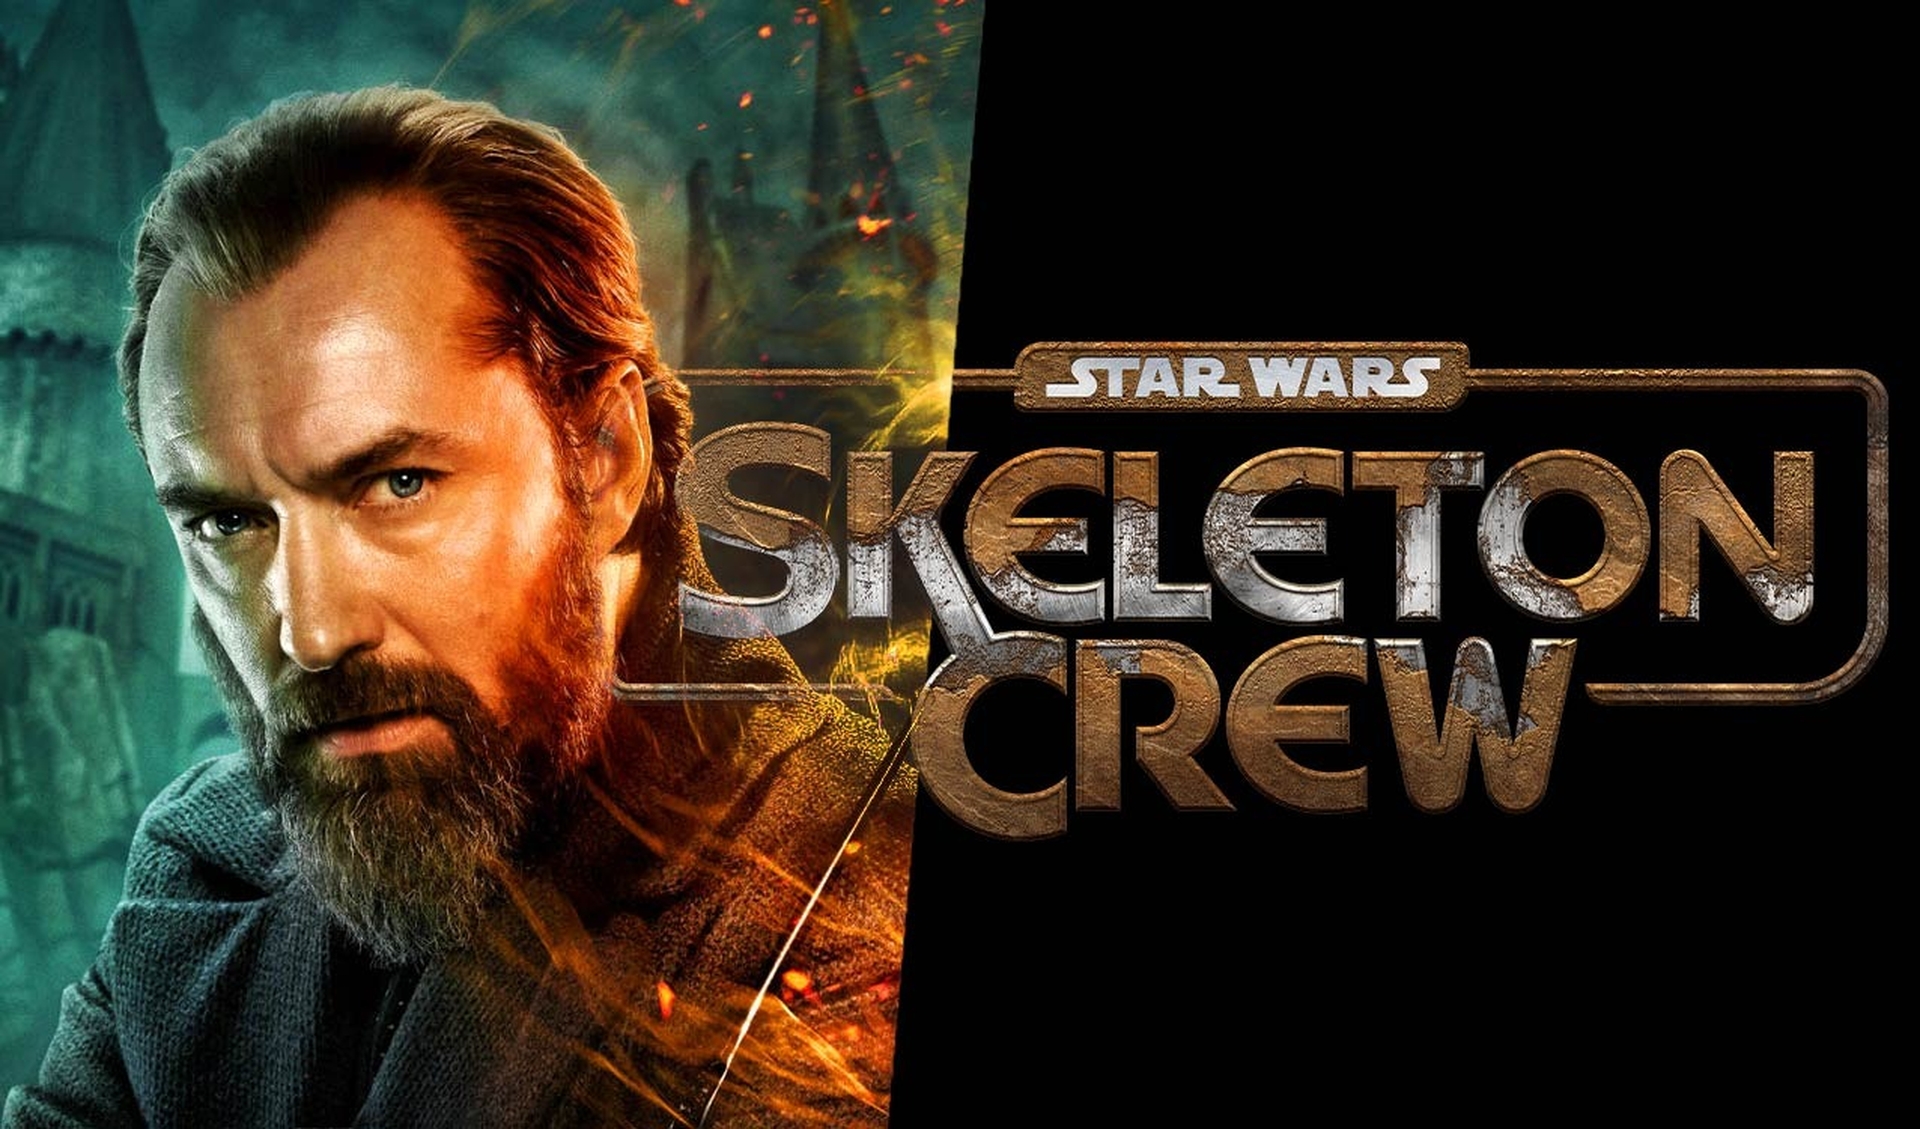 Был представлен Skeleton Crew Star Wars, новый сериал Disney+ с Джудом Лоу в главной роли, и мы рассказали все, что знаем о предстоящем сериале и других проектах Disney.